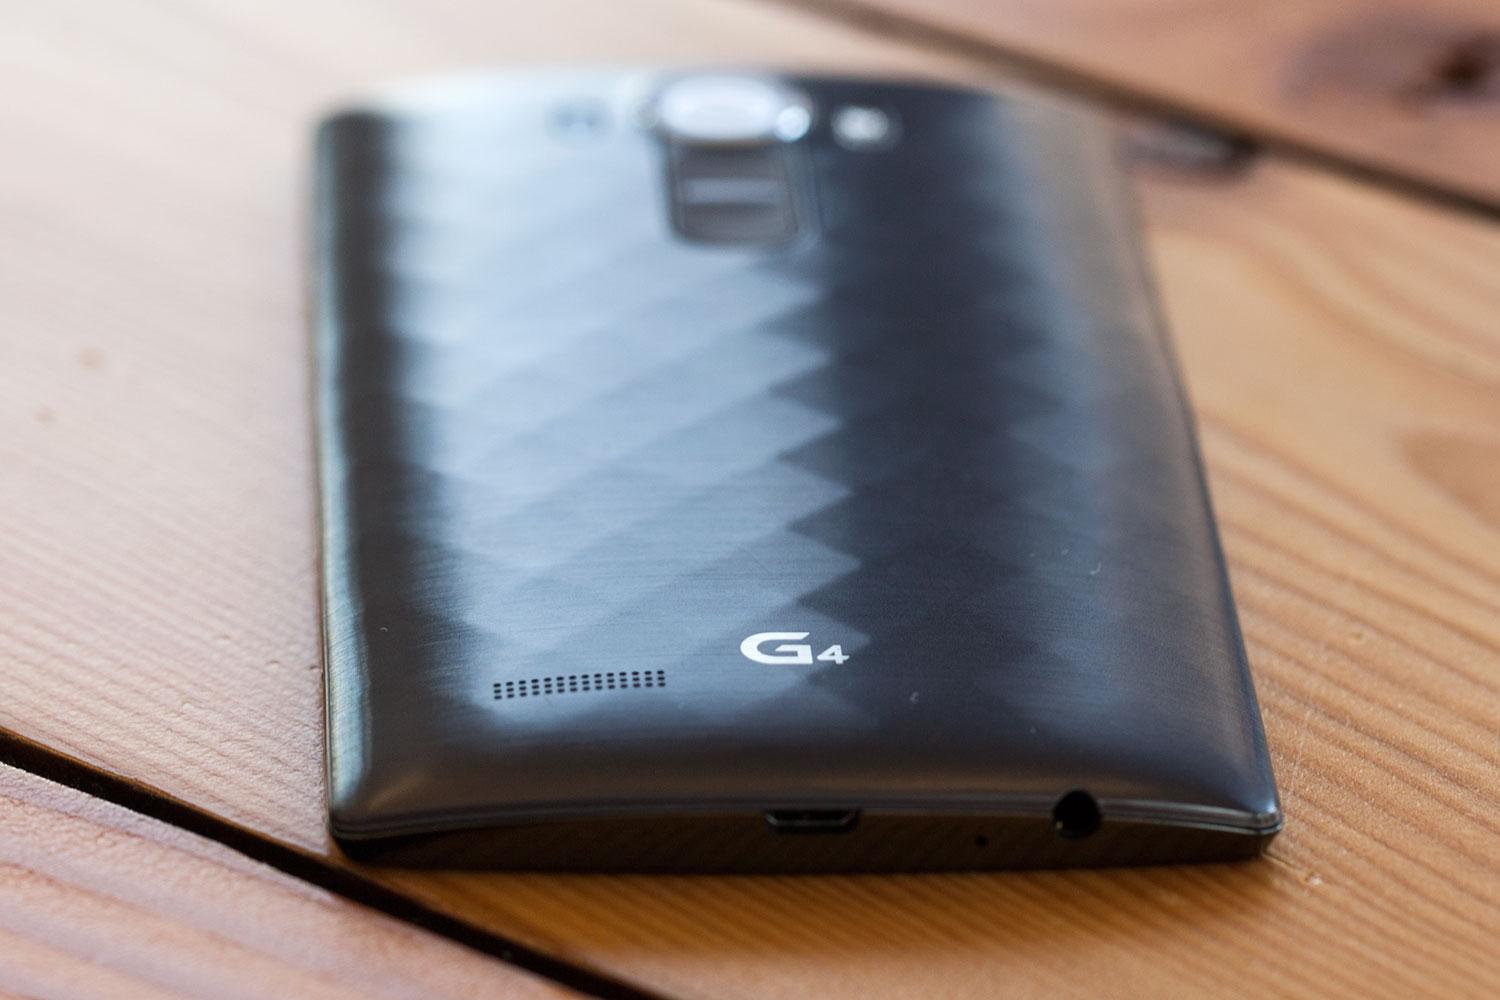 LG G4 Phone